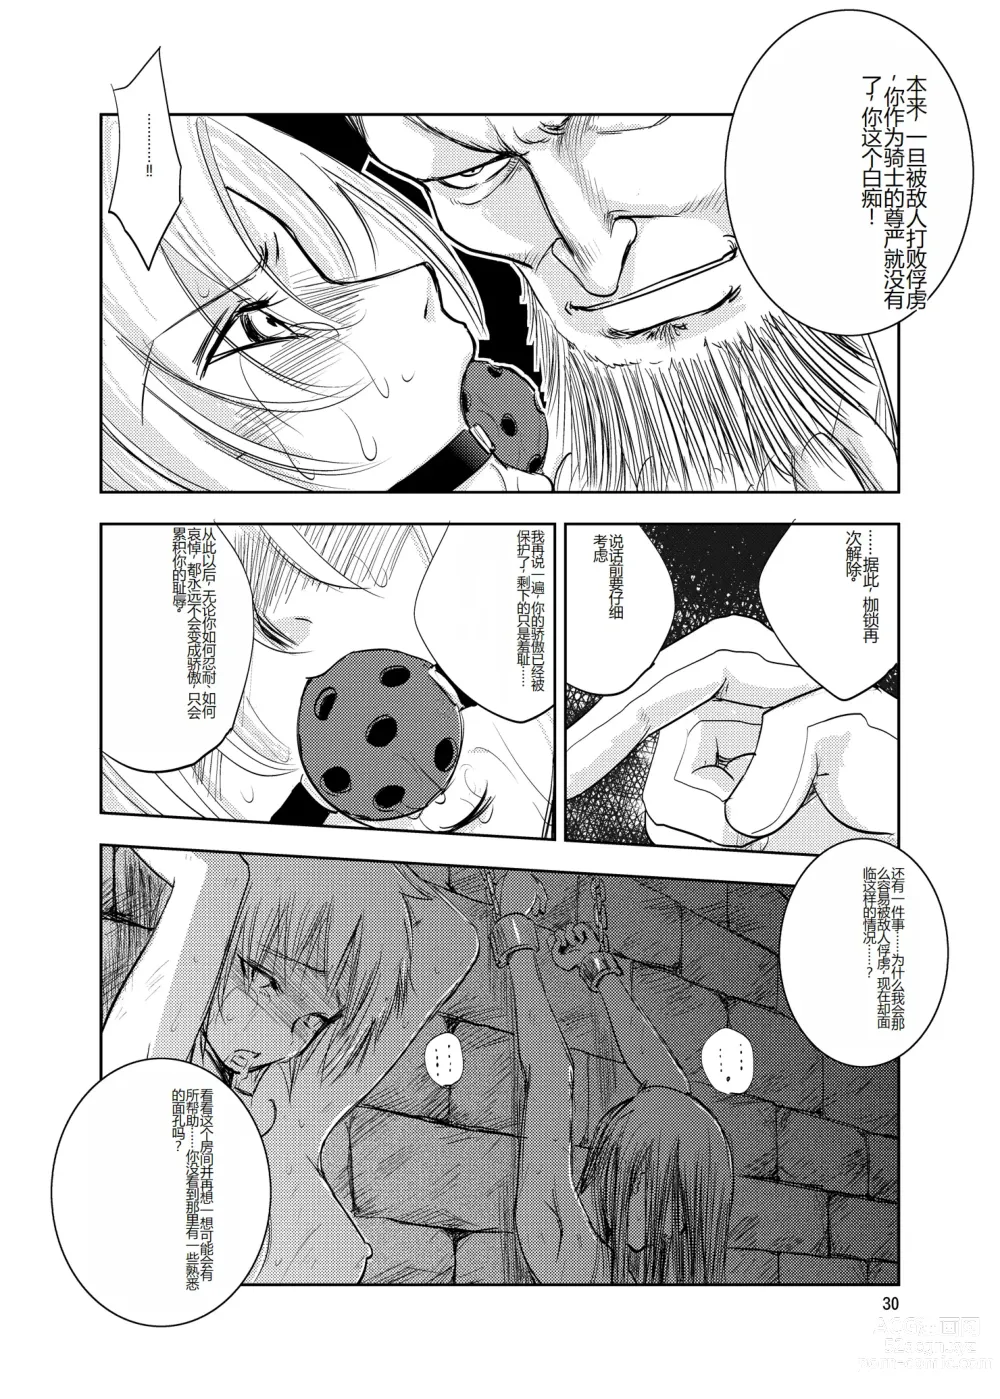 Page 30 of doujinshi GRASSENS WAR ANOTHER STORY Ex #02 Node Shinkou II